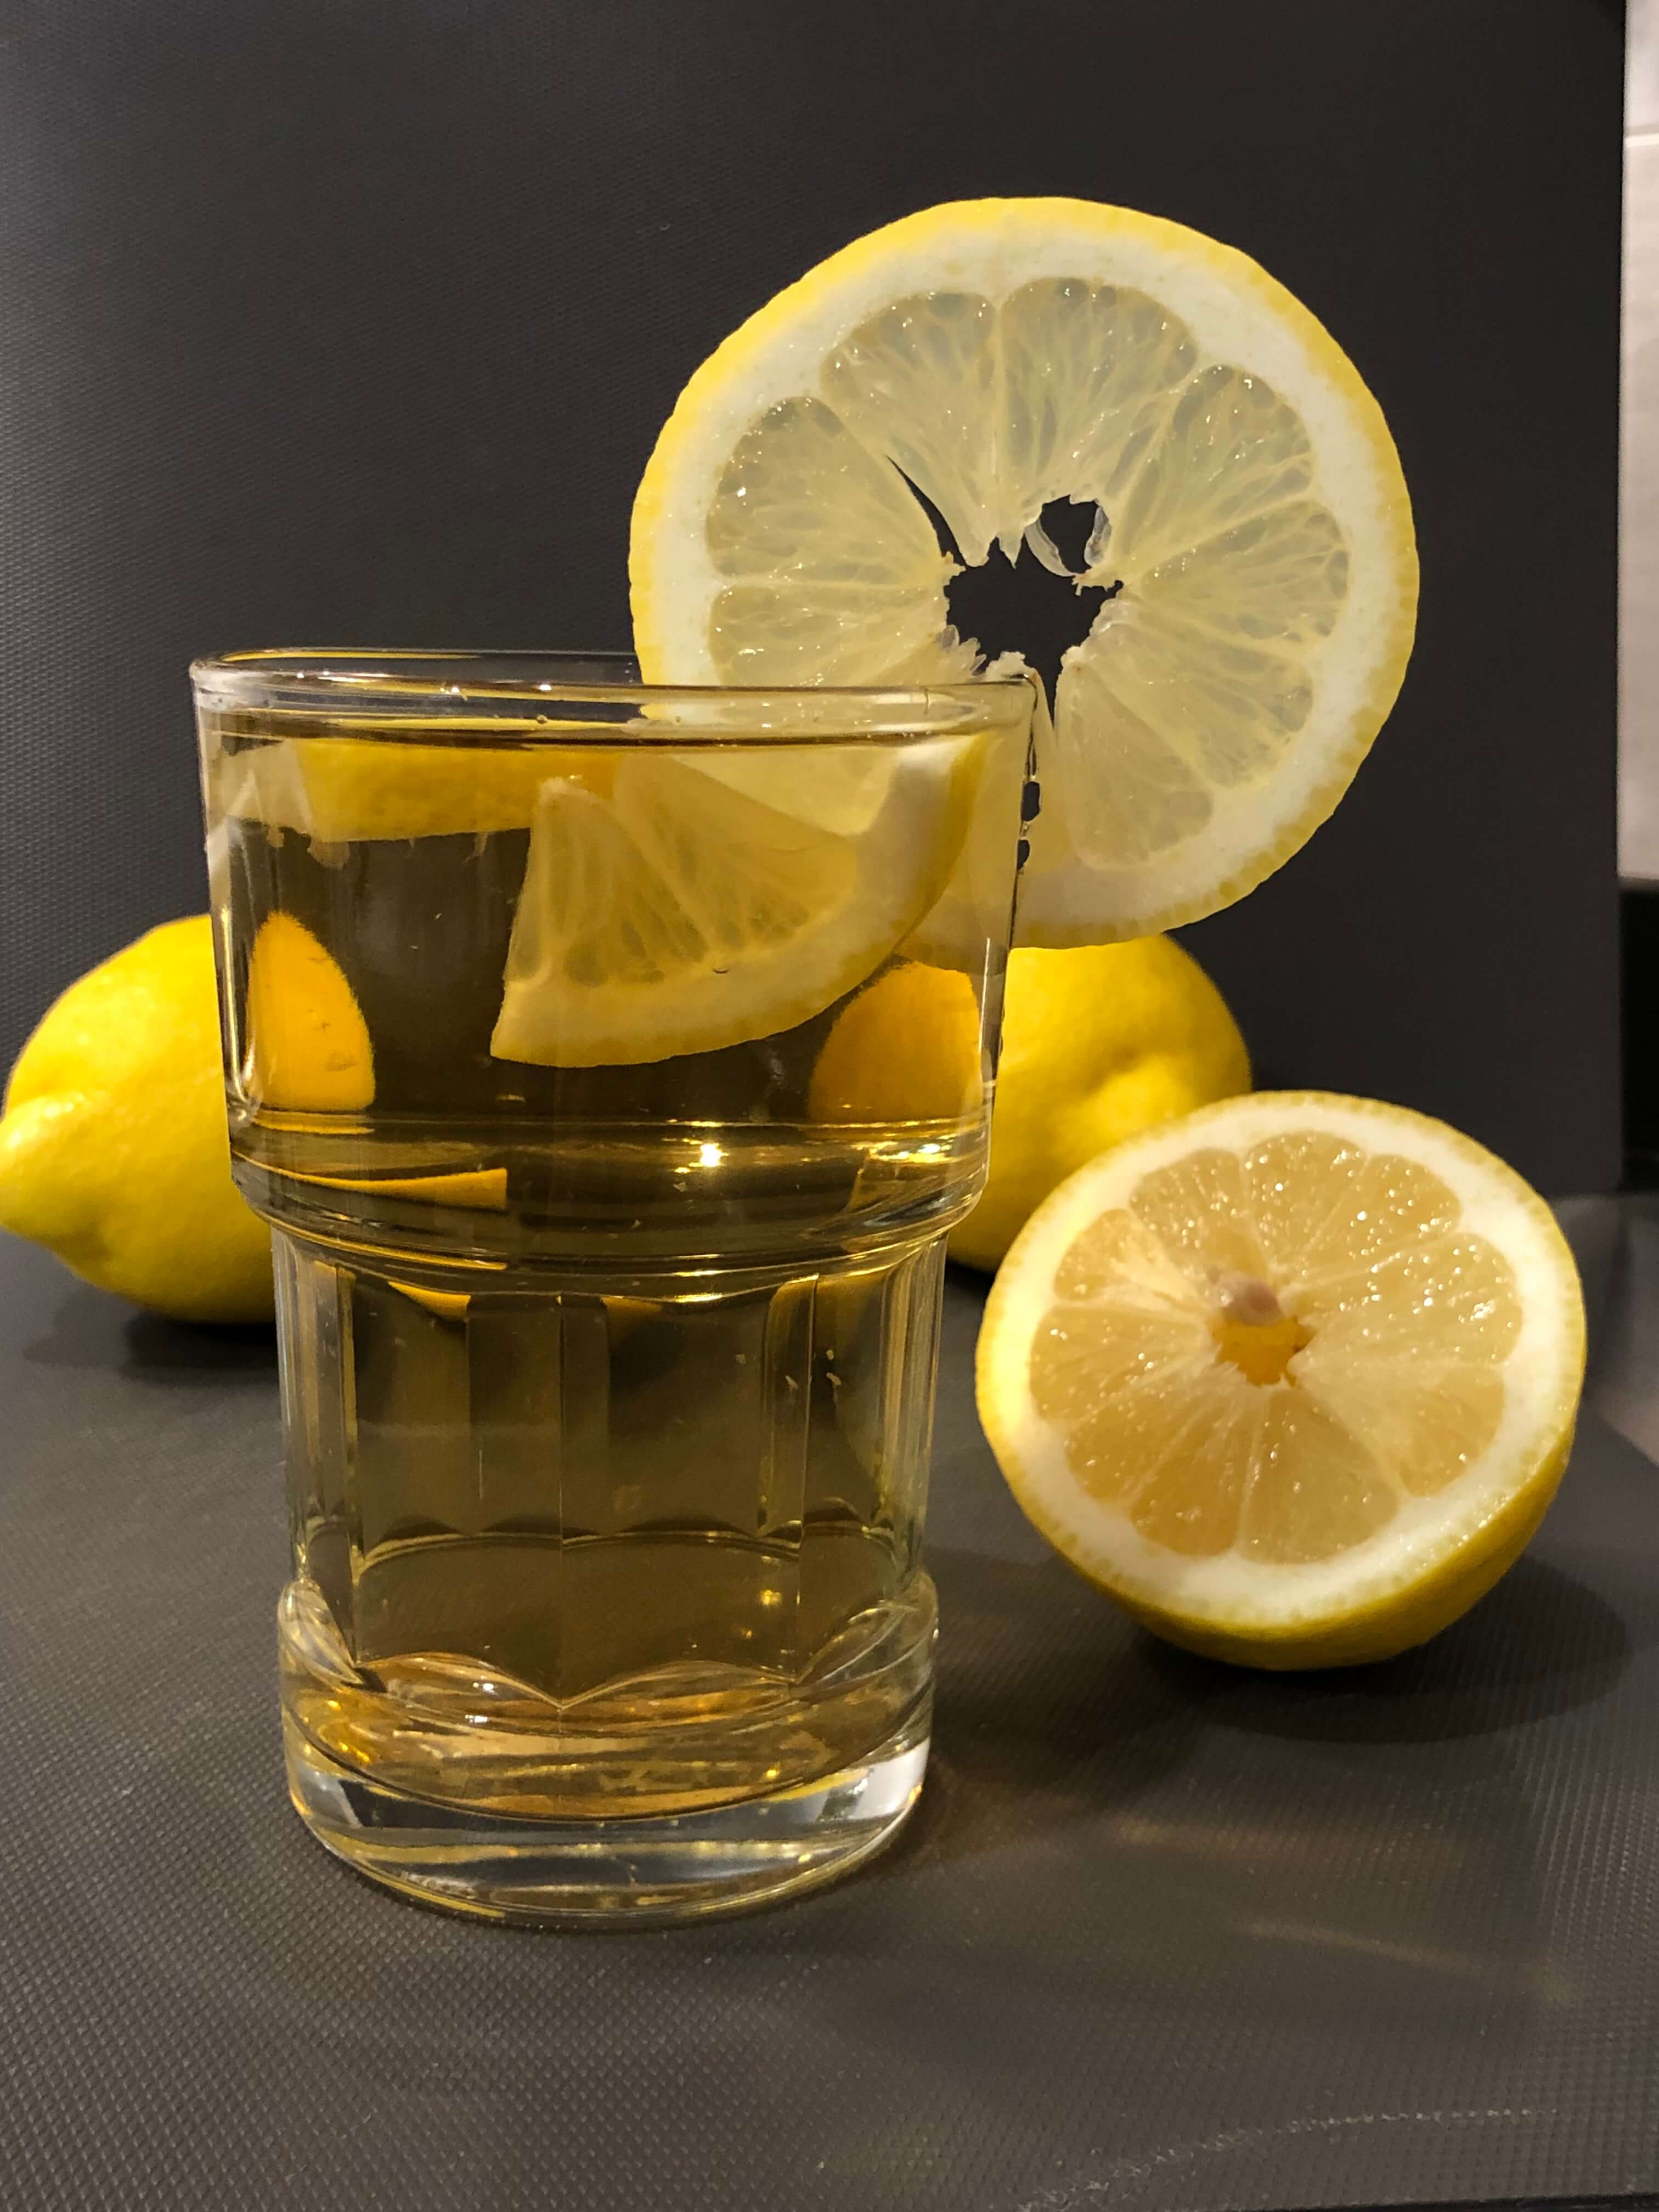 saigon kava pineapple leaf tea with citrus